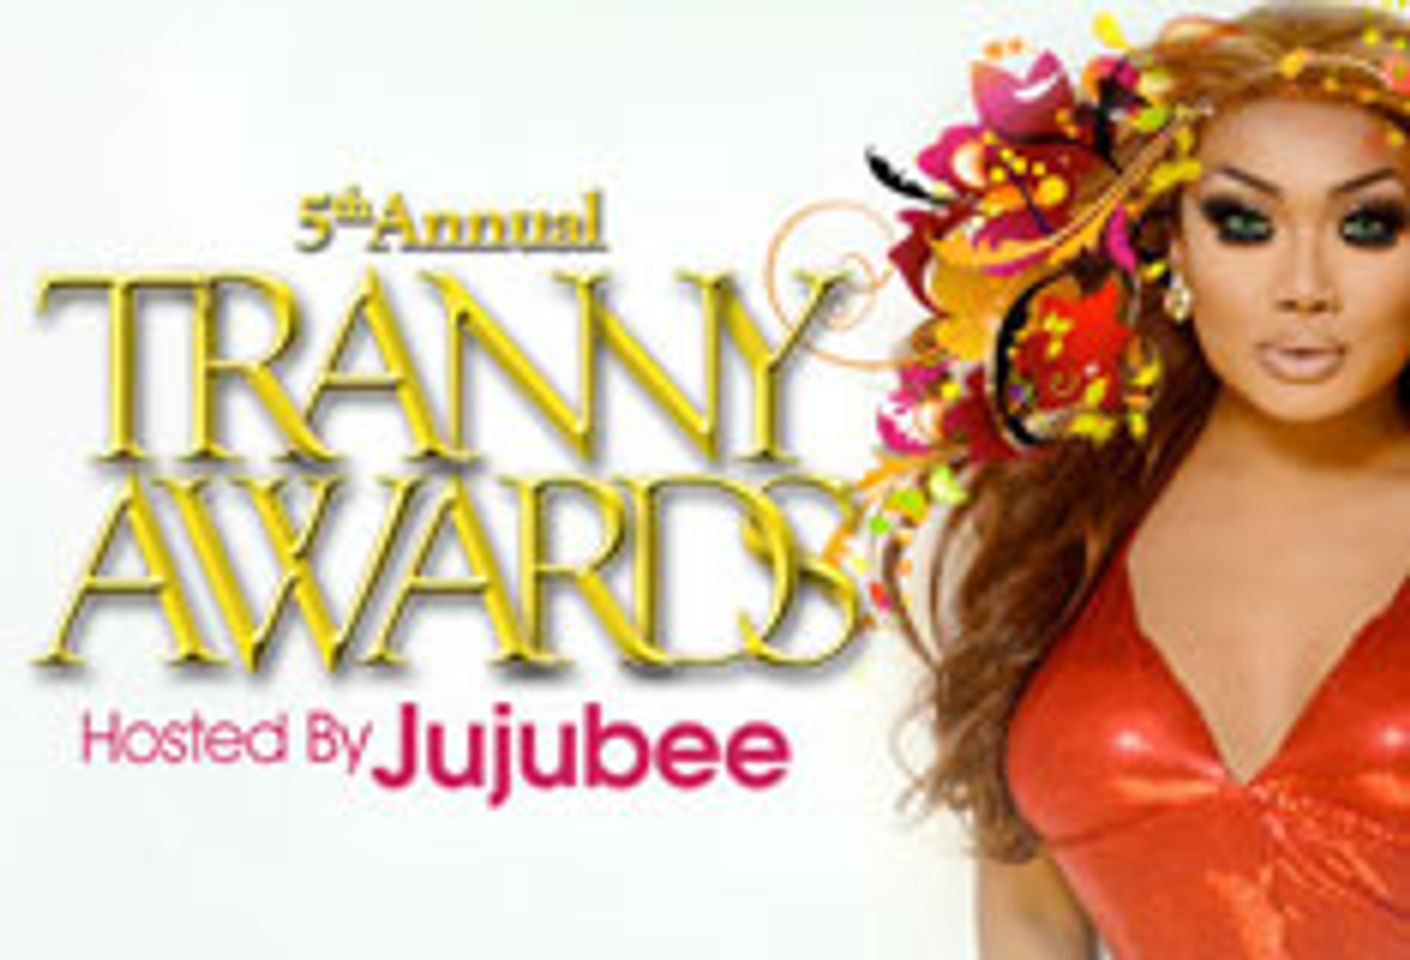 Tranny Award Nominees Announced; Eros.com Back As Sponsor